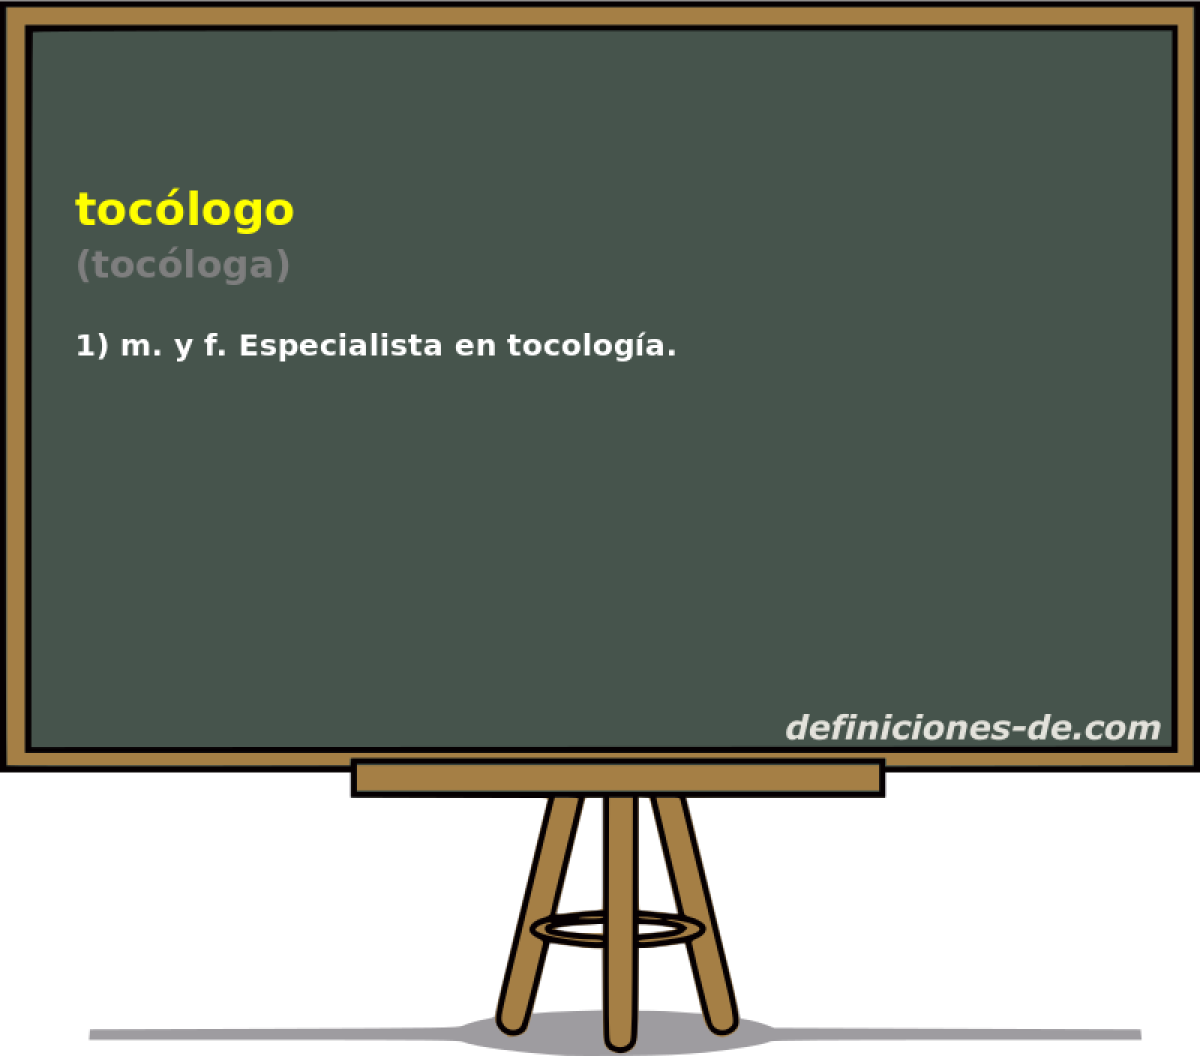 toclogo (tocloga)